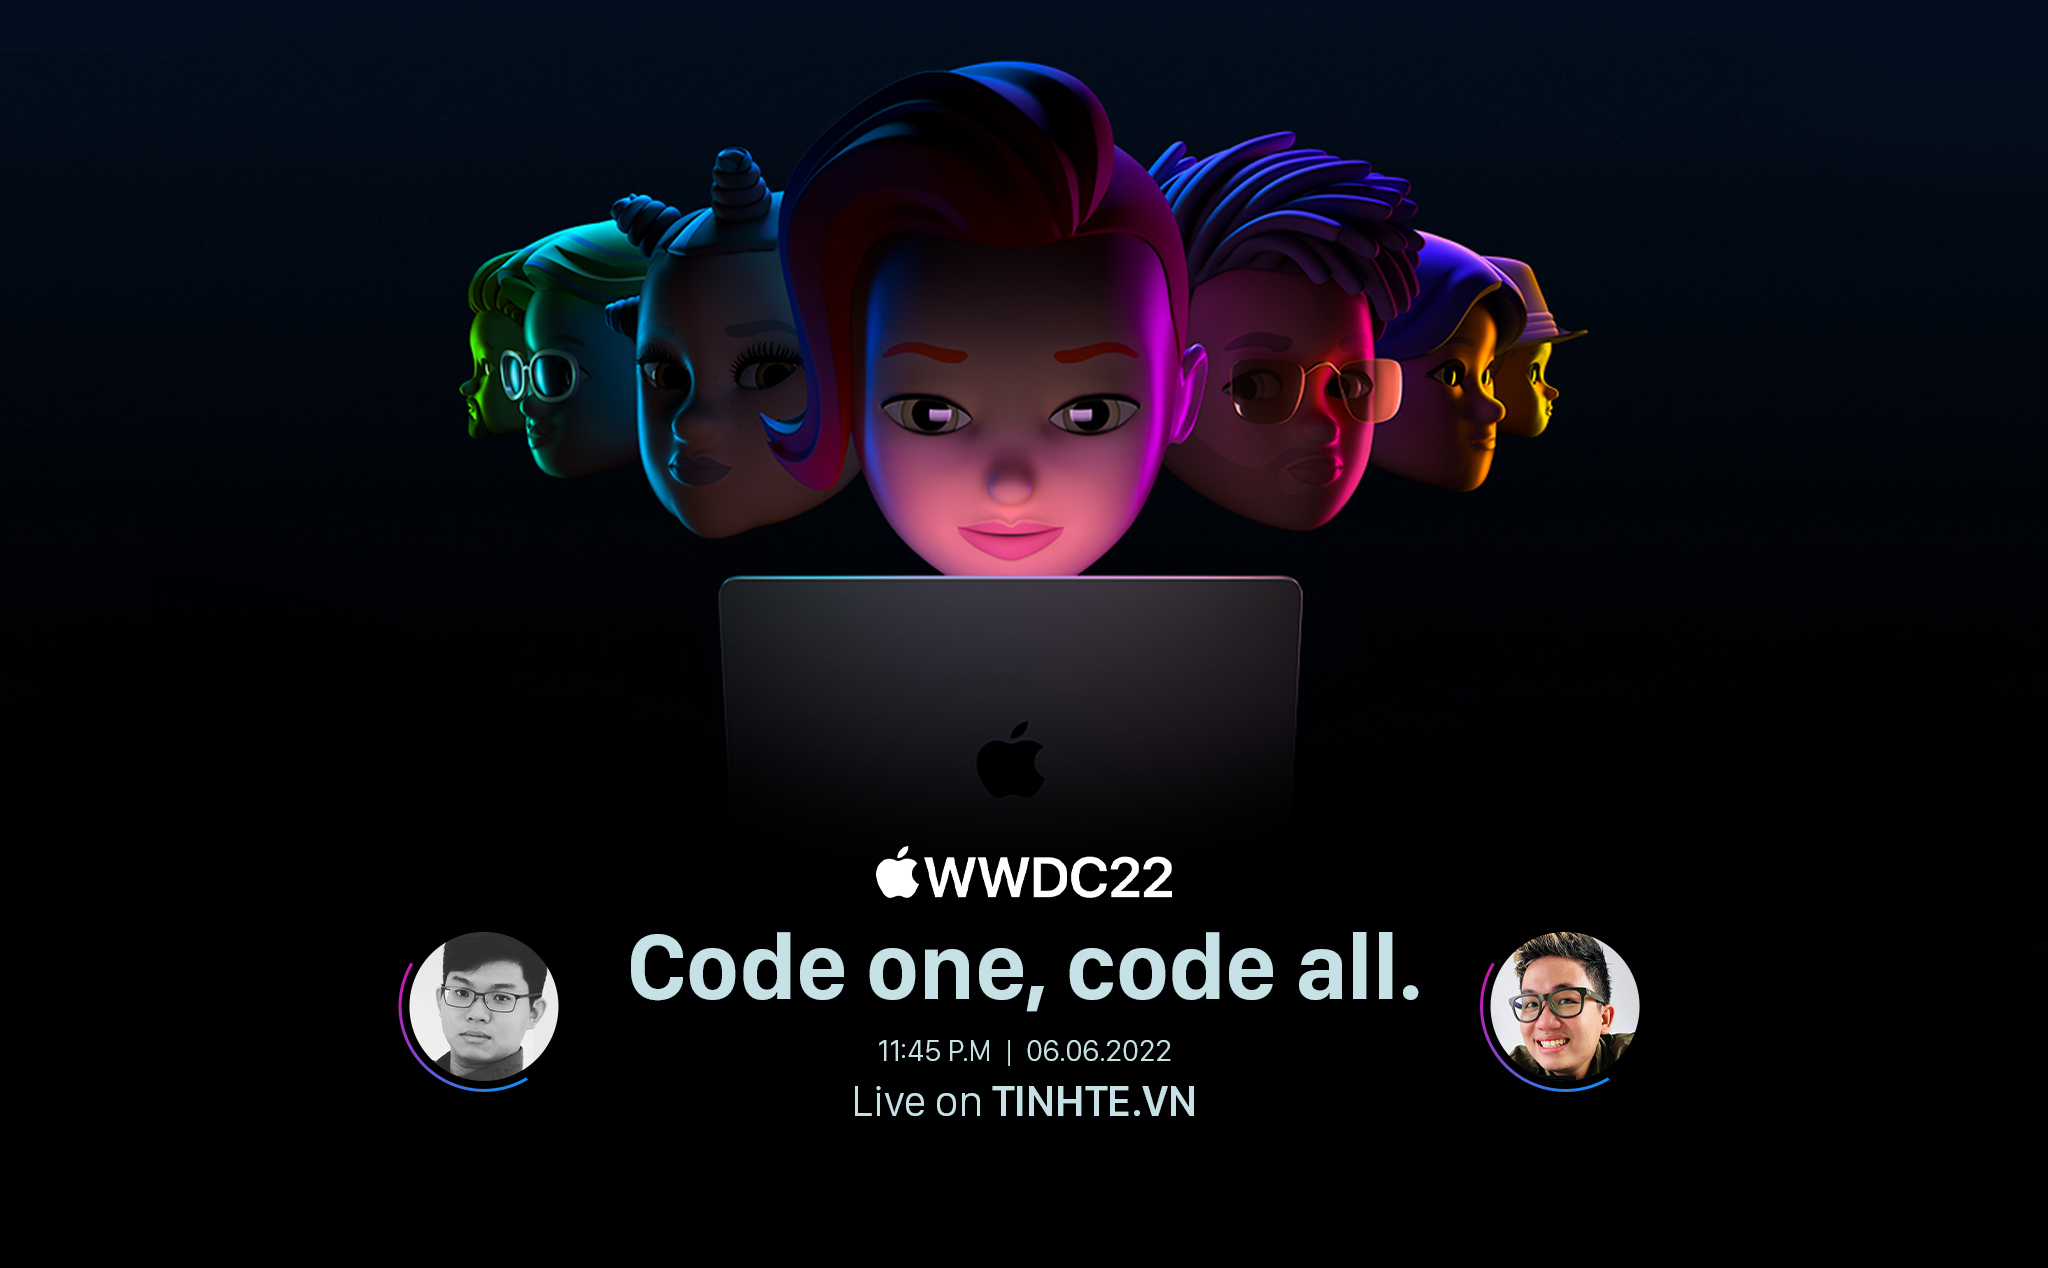 Mời anh em xem livestream sự kiện WWDC 2022: 23 giờ 45 phút, ngày 6 tháng Sáu